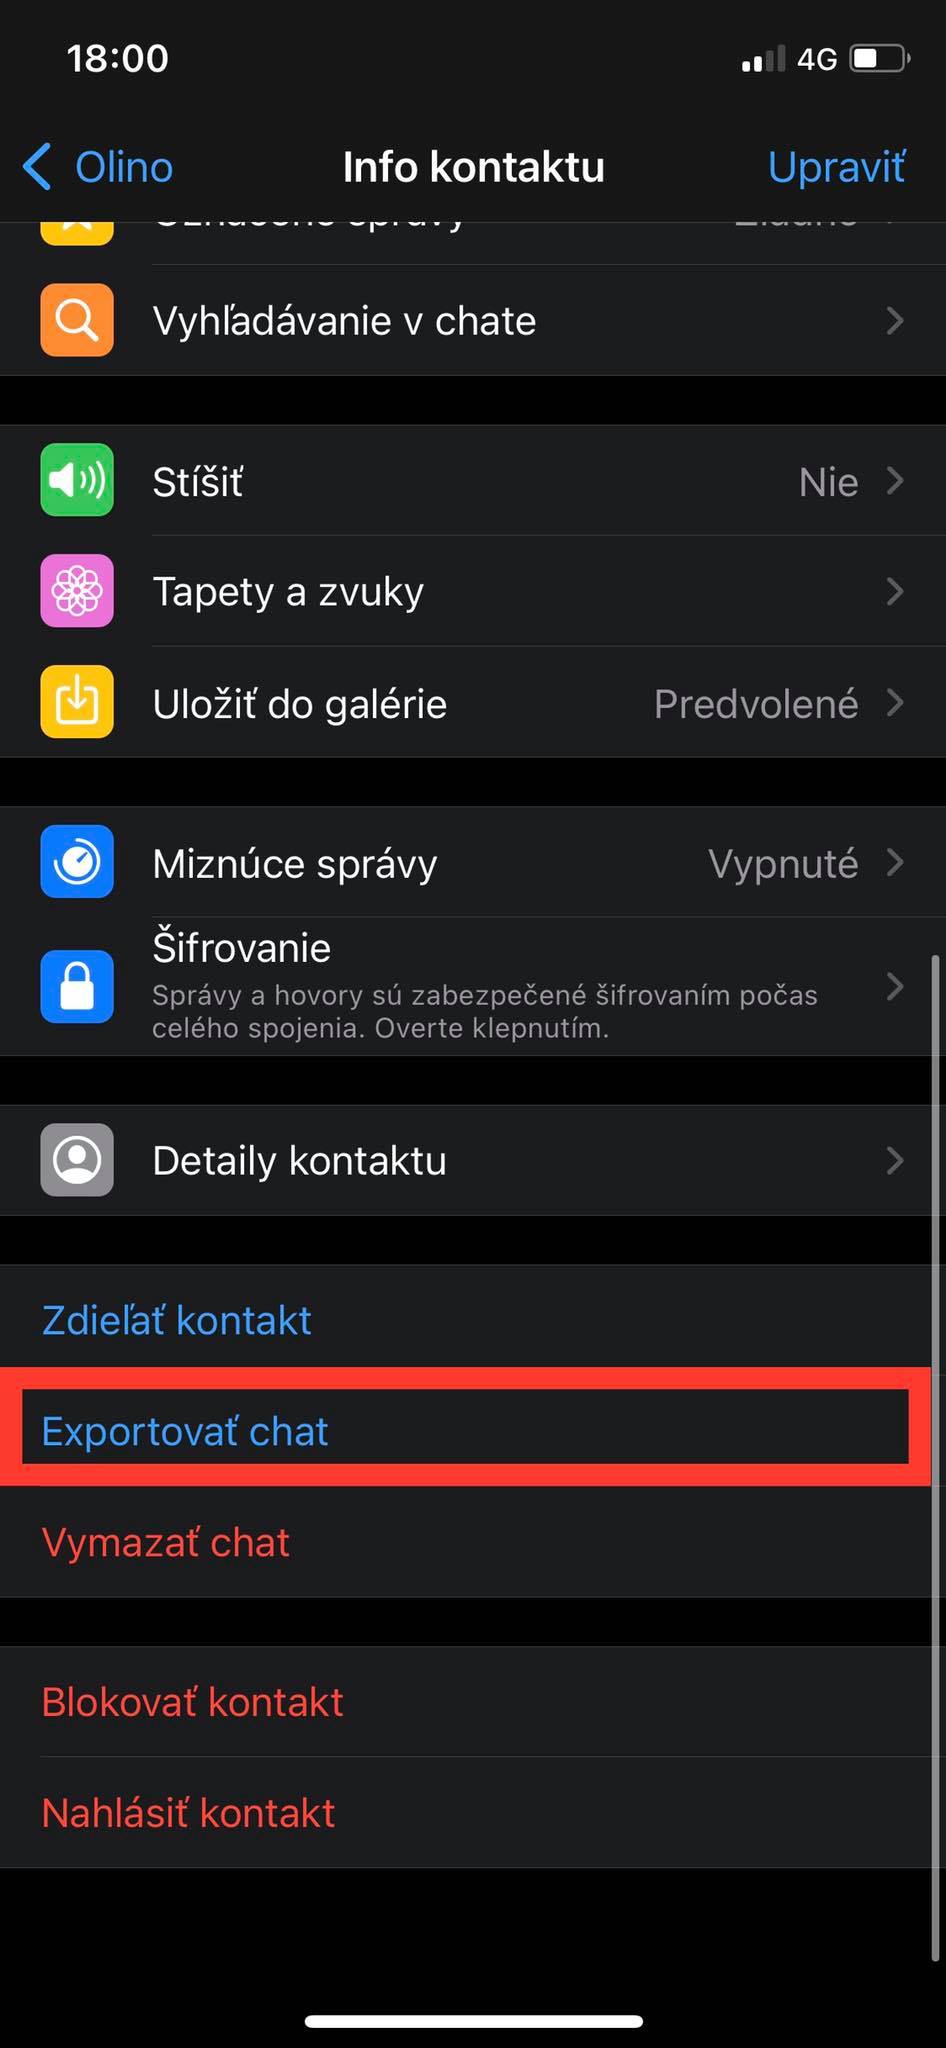 Ako preniesť konverzáciu z WhatsAppu na Telegram?